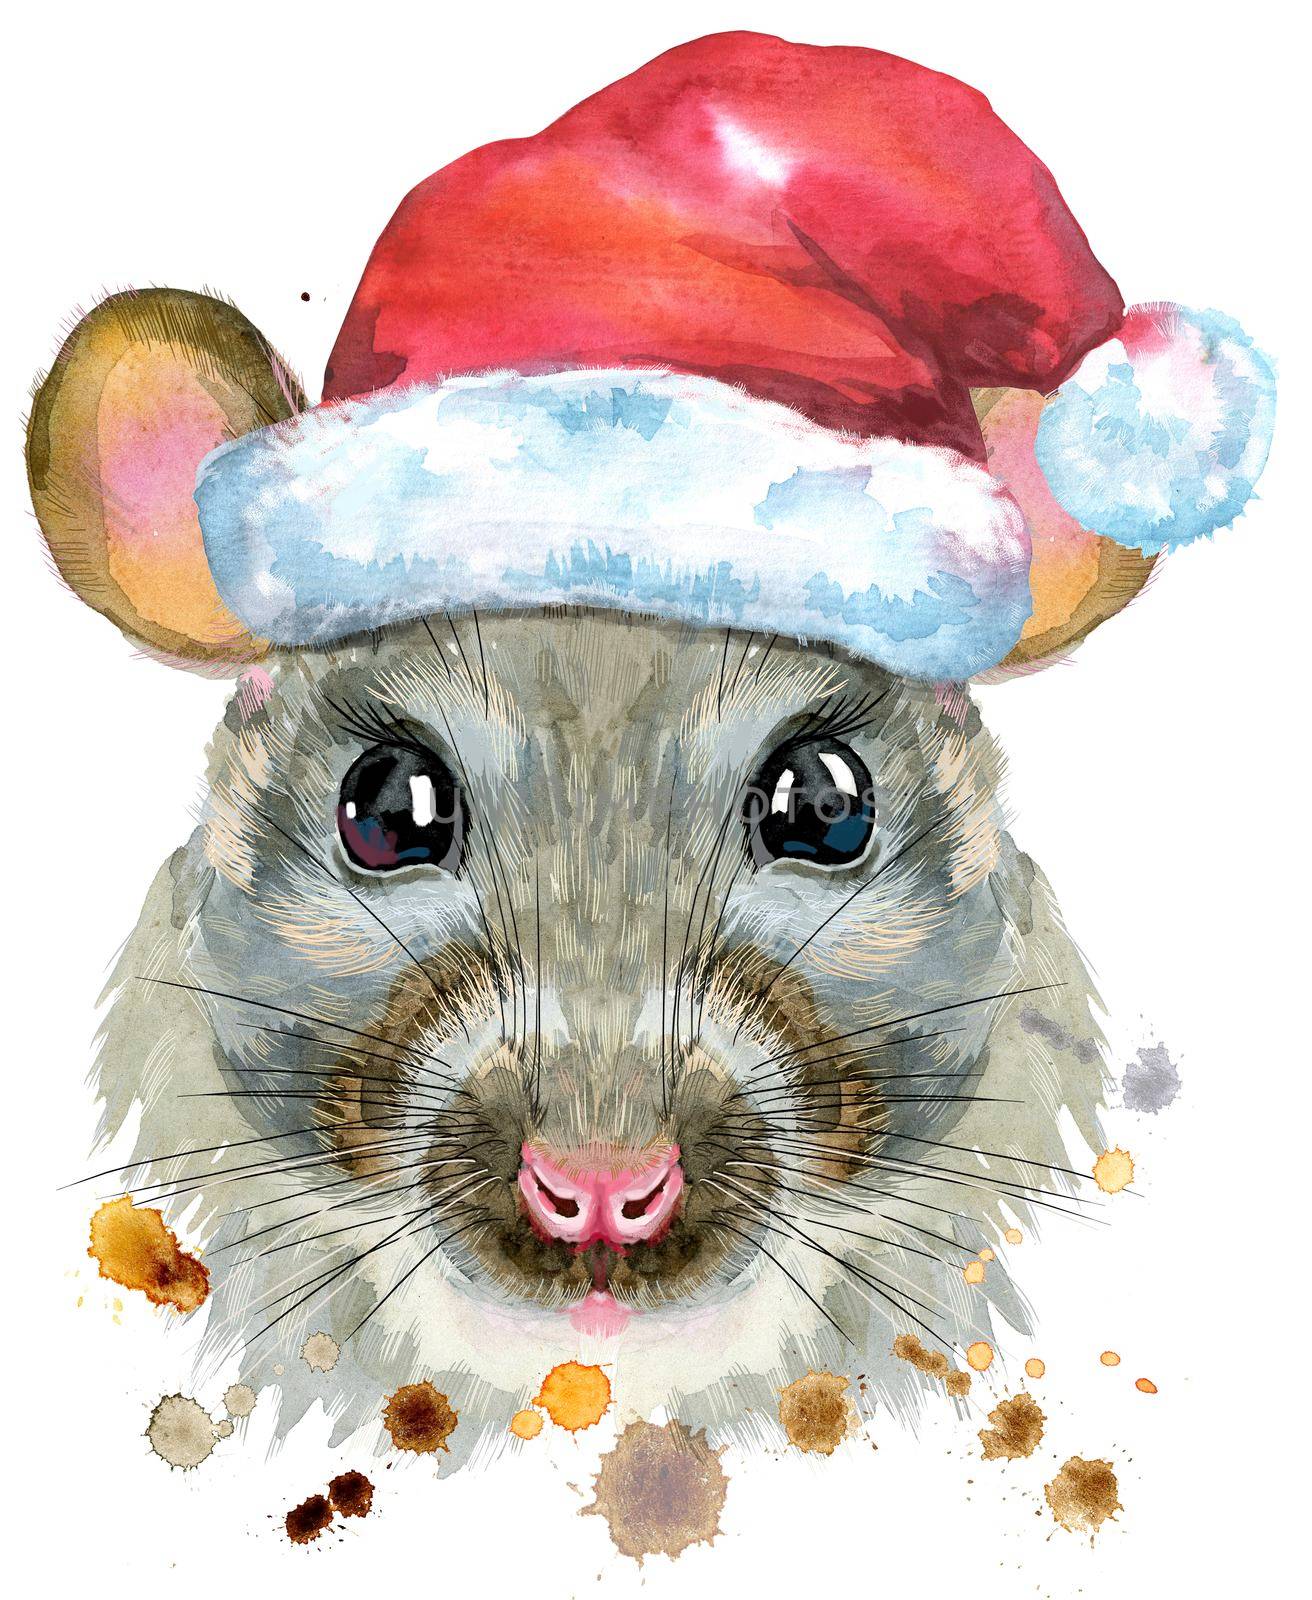 Cute rat in Santa hat for t-shirt graphics. Watercolor rat illustration